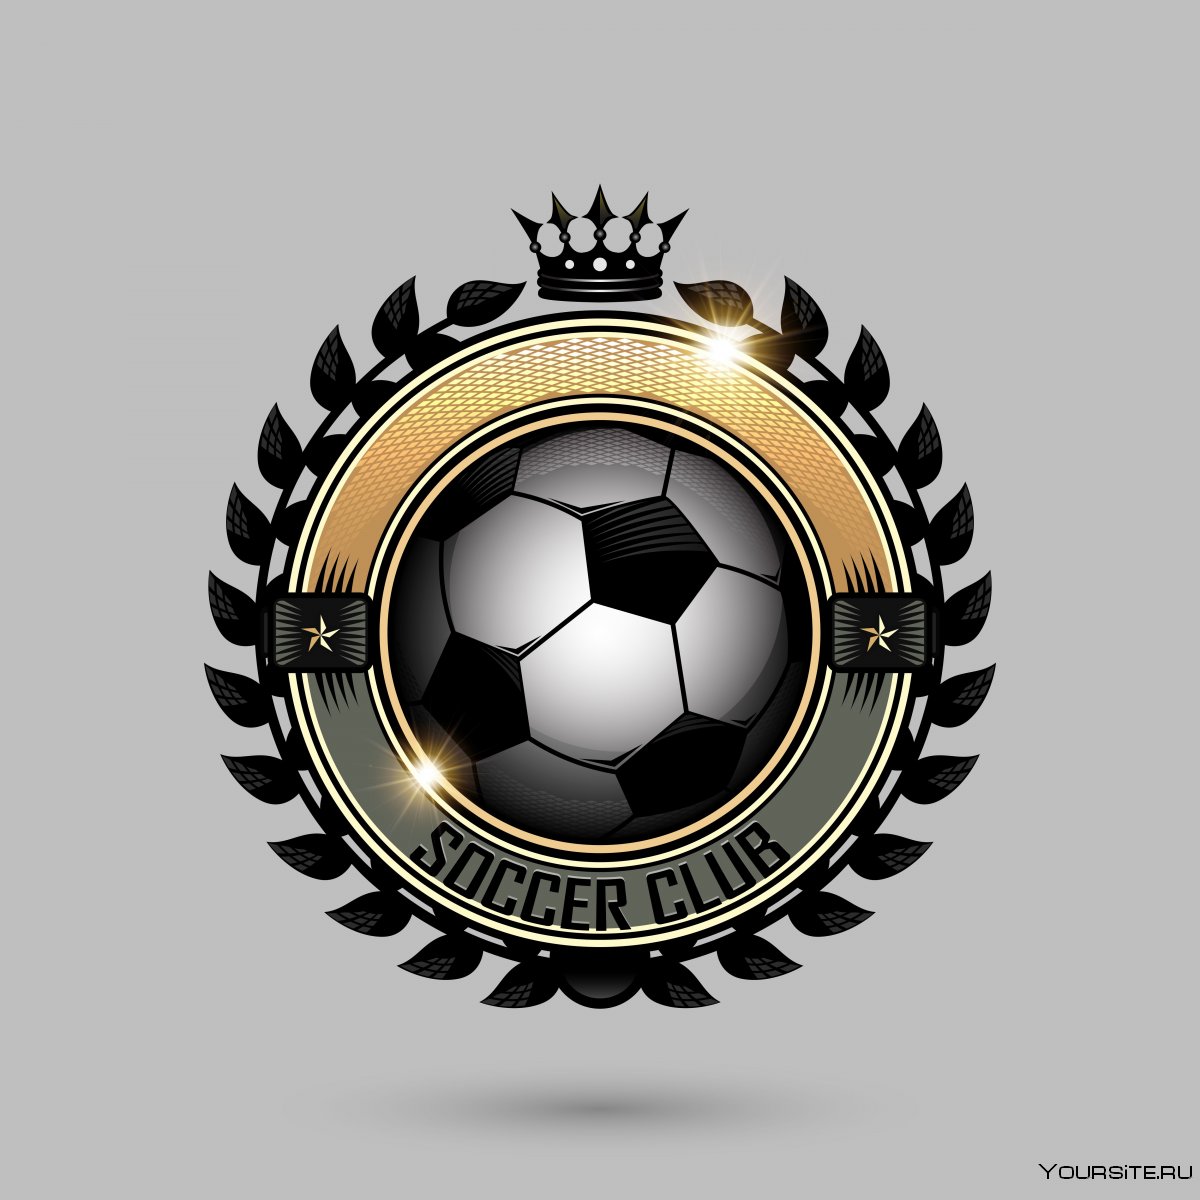 Сборная Германии по футболу логотип